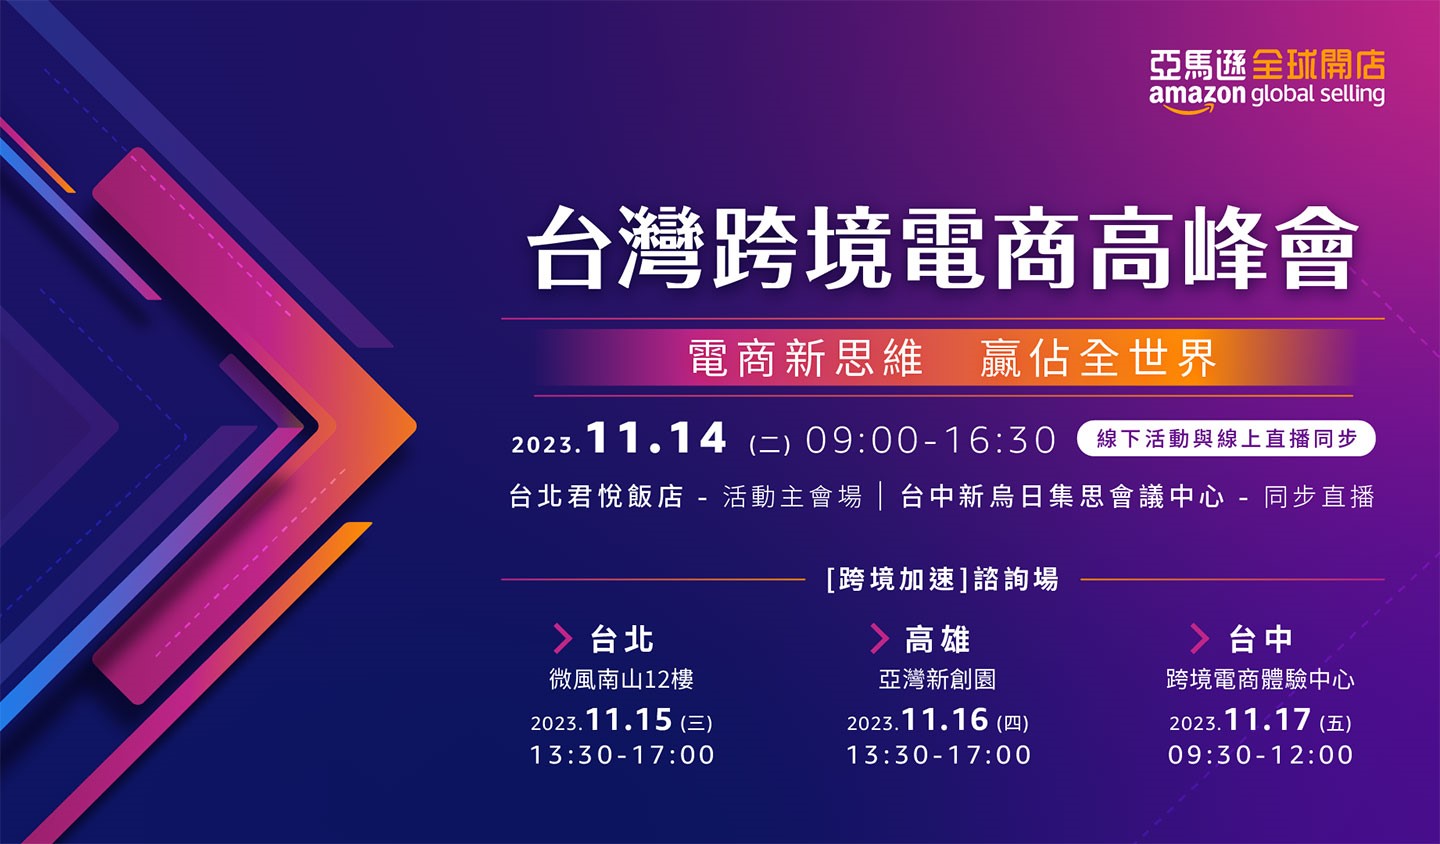 有志進軍跨境電商的創家們，於 11/14 起舉辦的「2023 台灣跨境電商高峰會」將為你帶來更明確的指引！